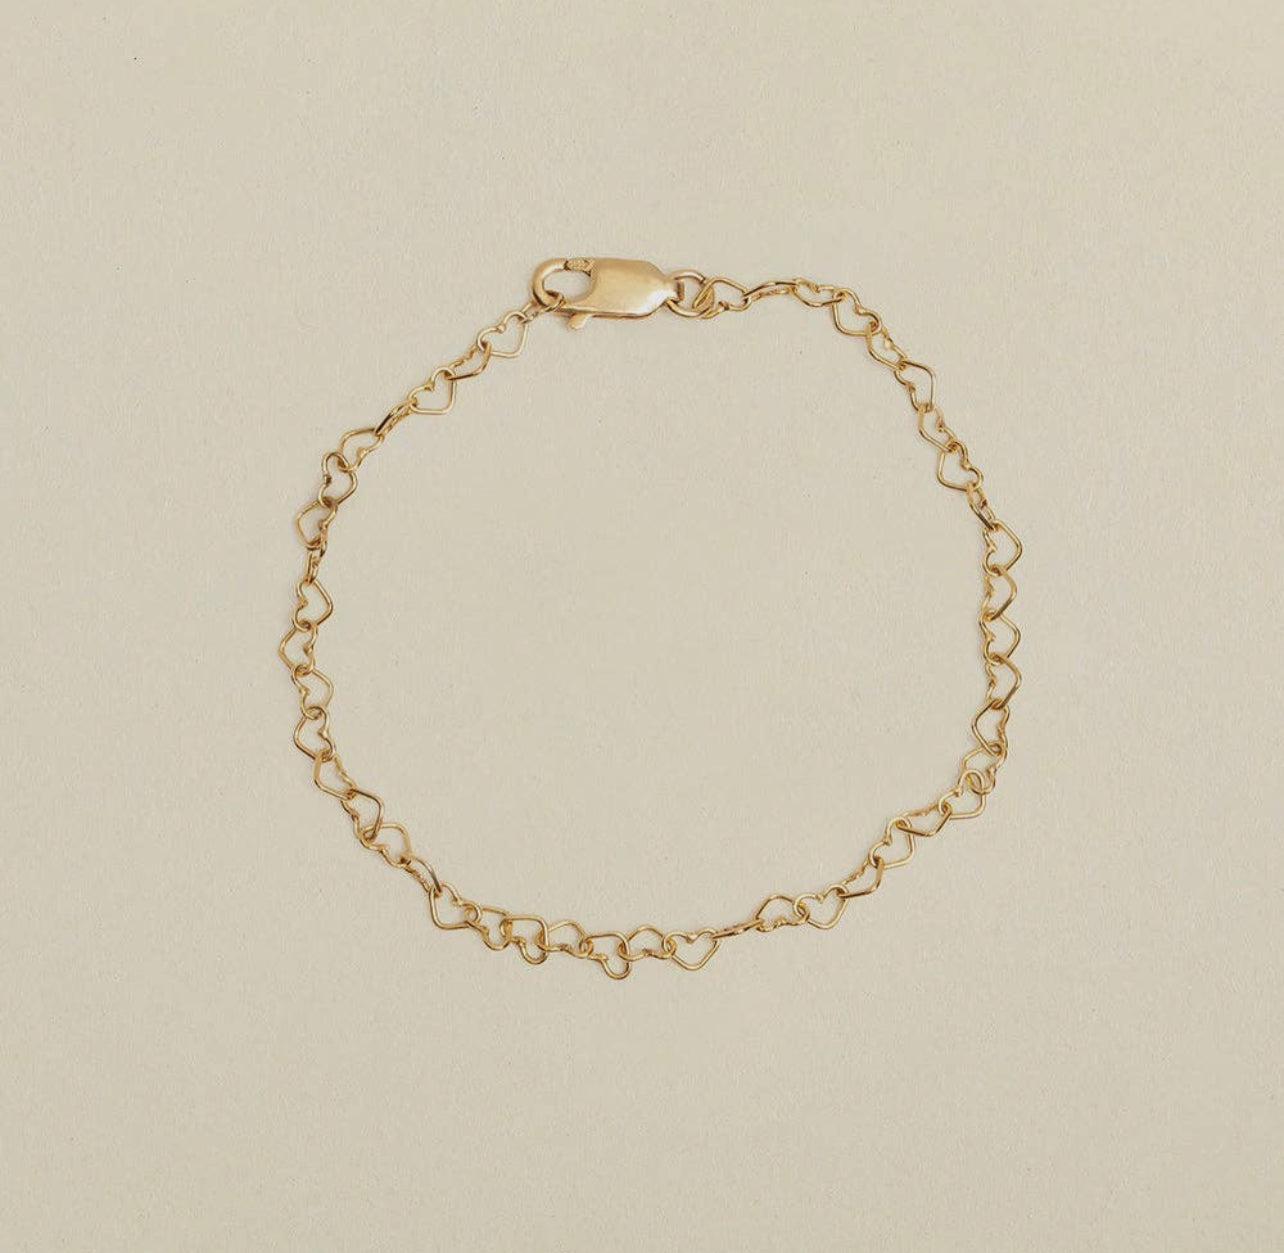 Heart Chain Bracelet - Gold Filled